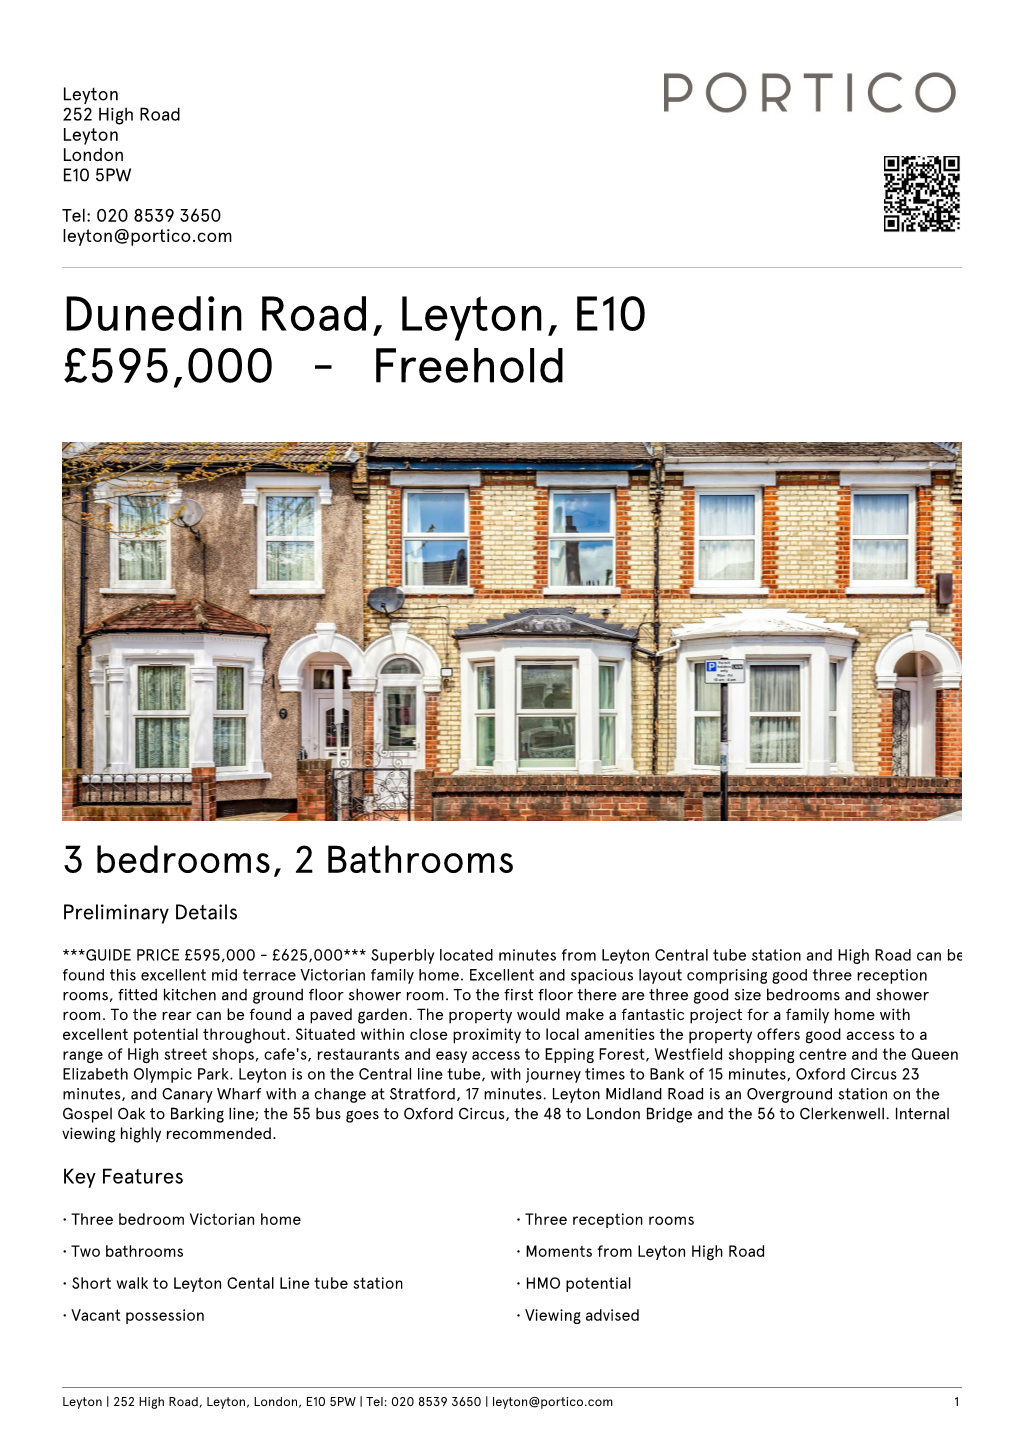 Dunedin Road, Leyton, E10 £595000